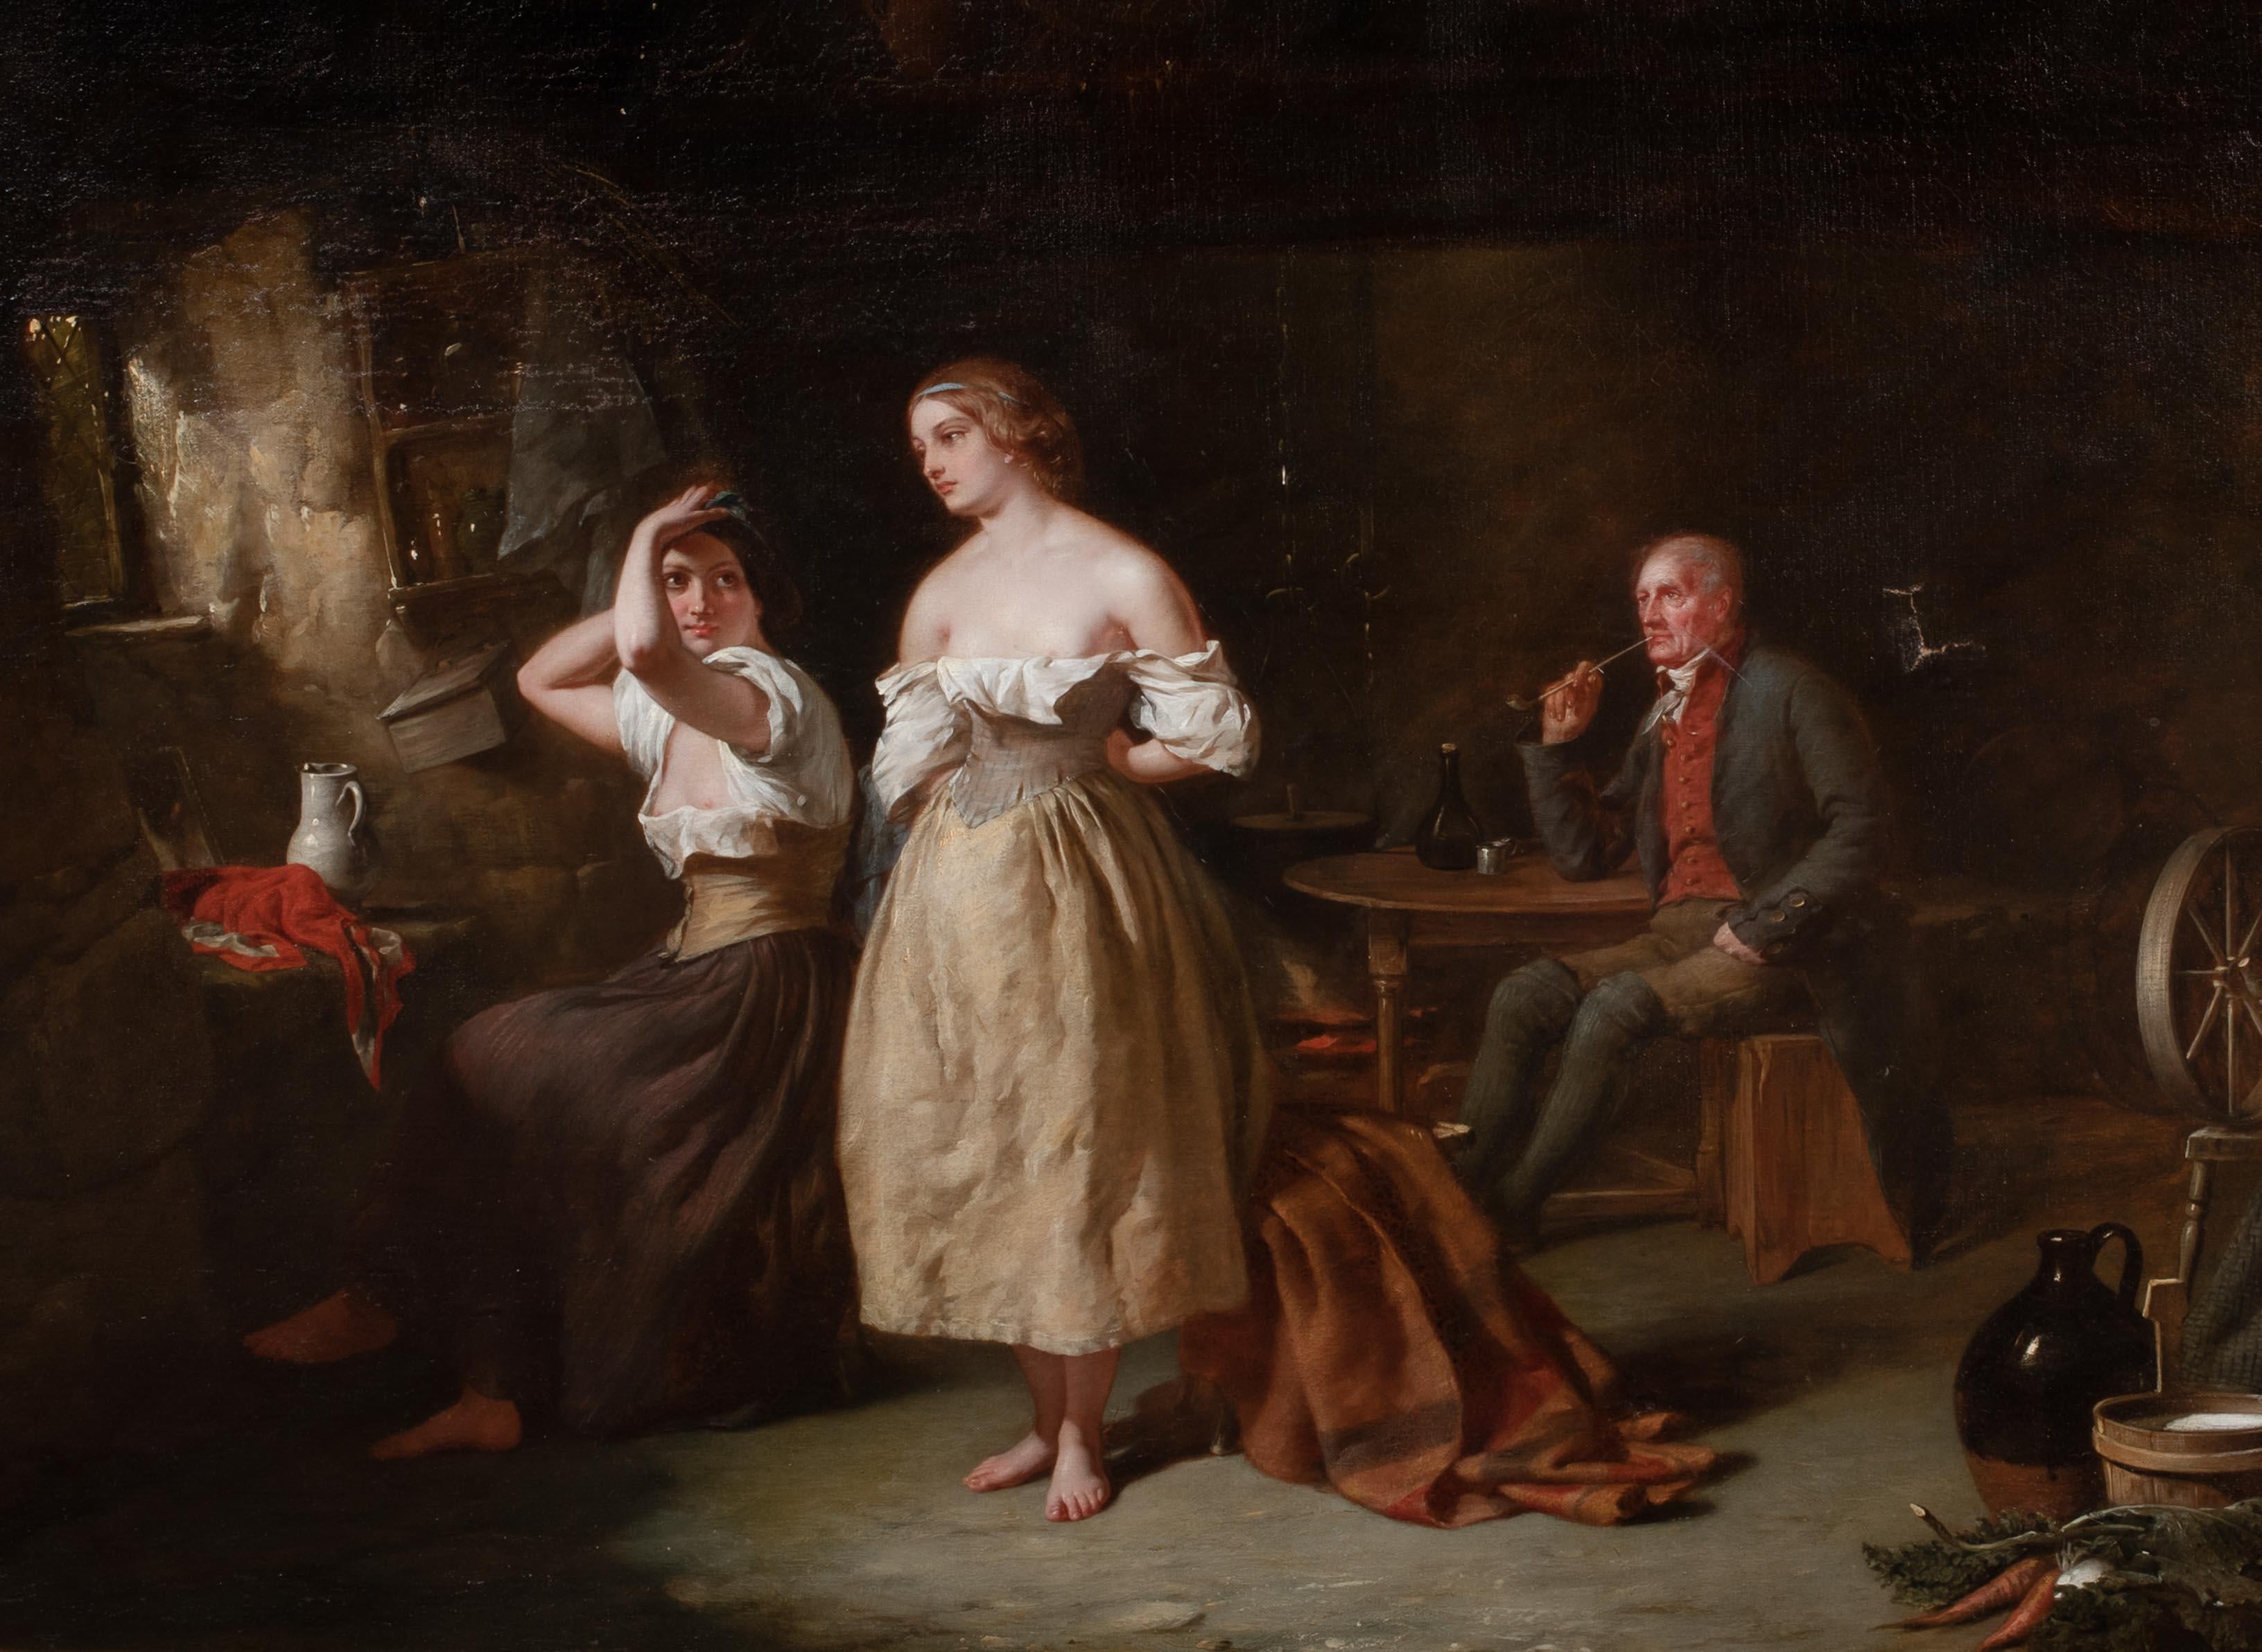 Prostitutes & Pimp In A Brothel Interior, 19th Century For Sale 2